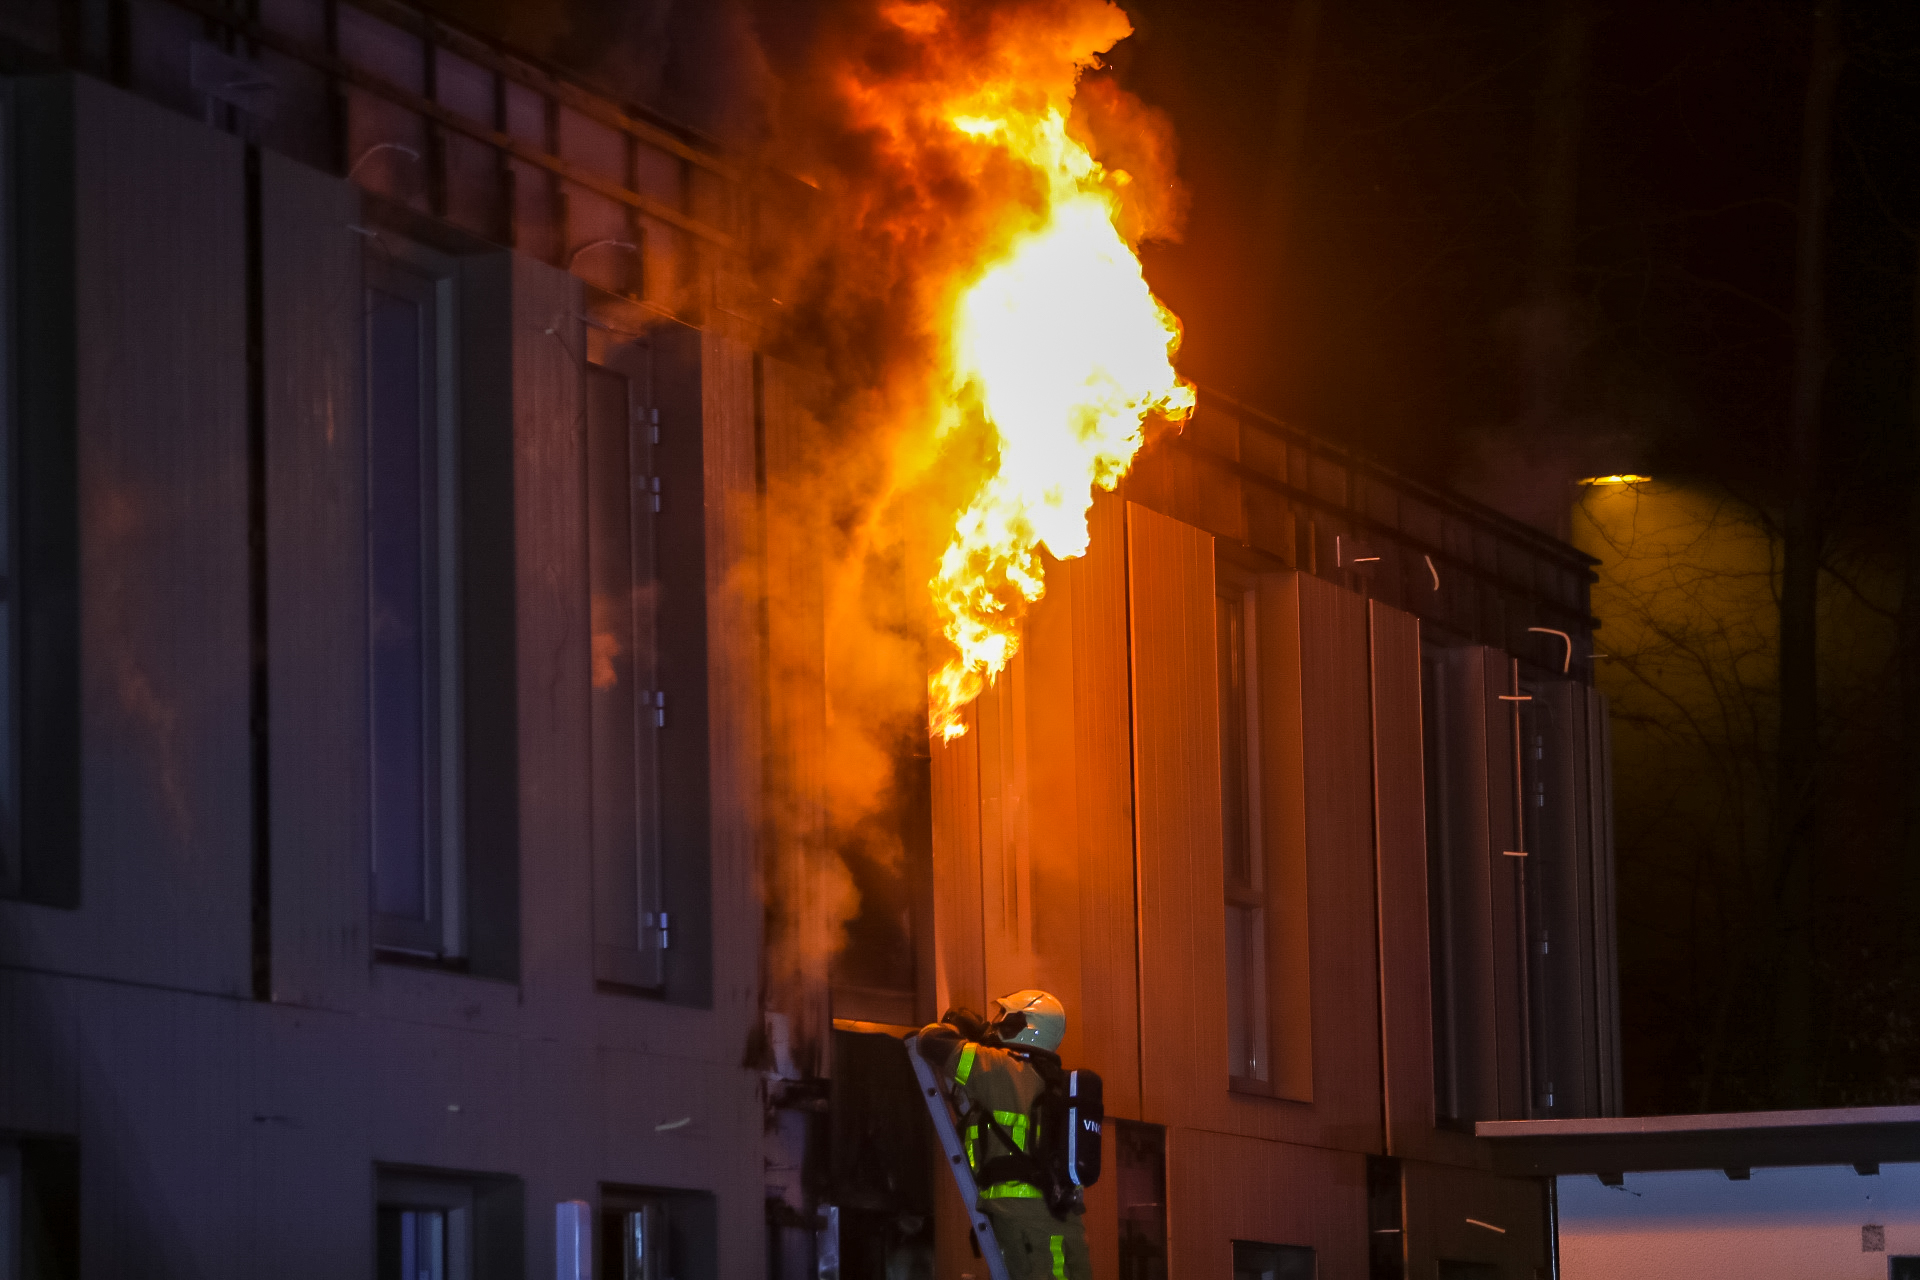 Grote uitslaande brand in nieuwbouwcomplex S’Heerenloo